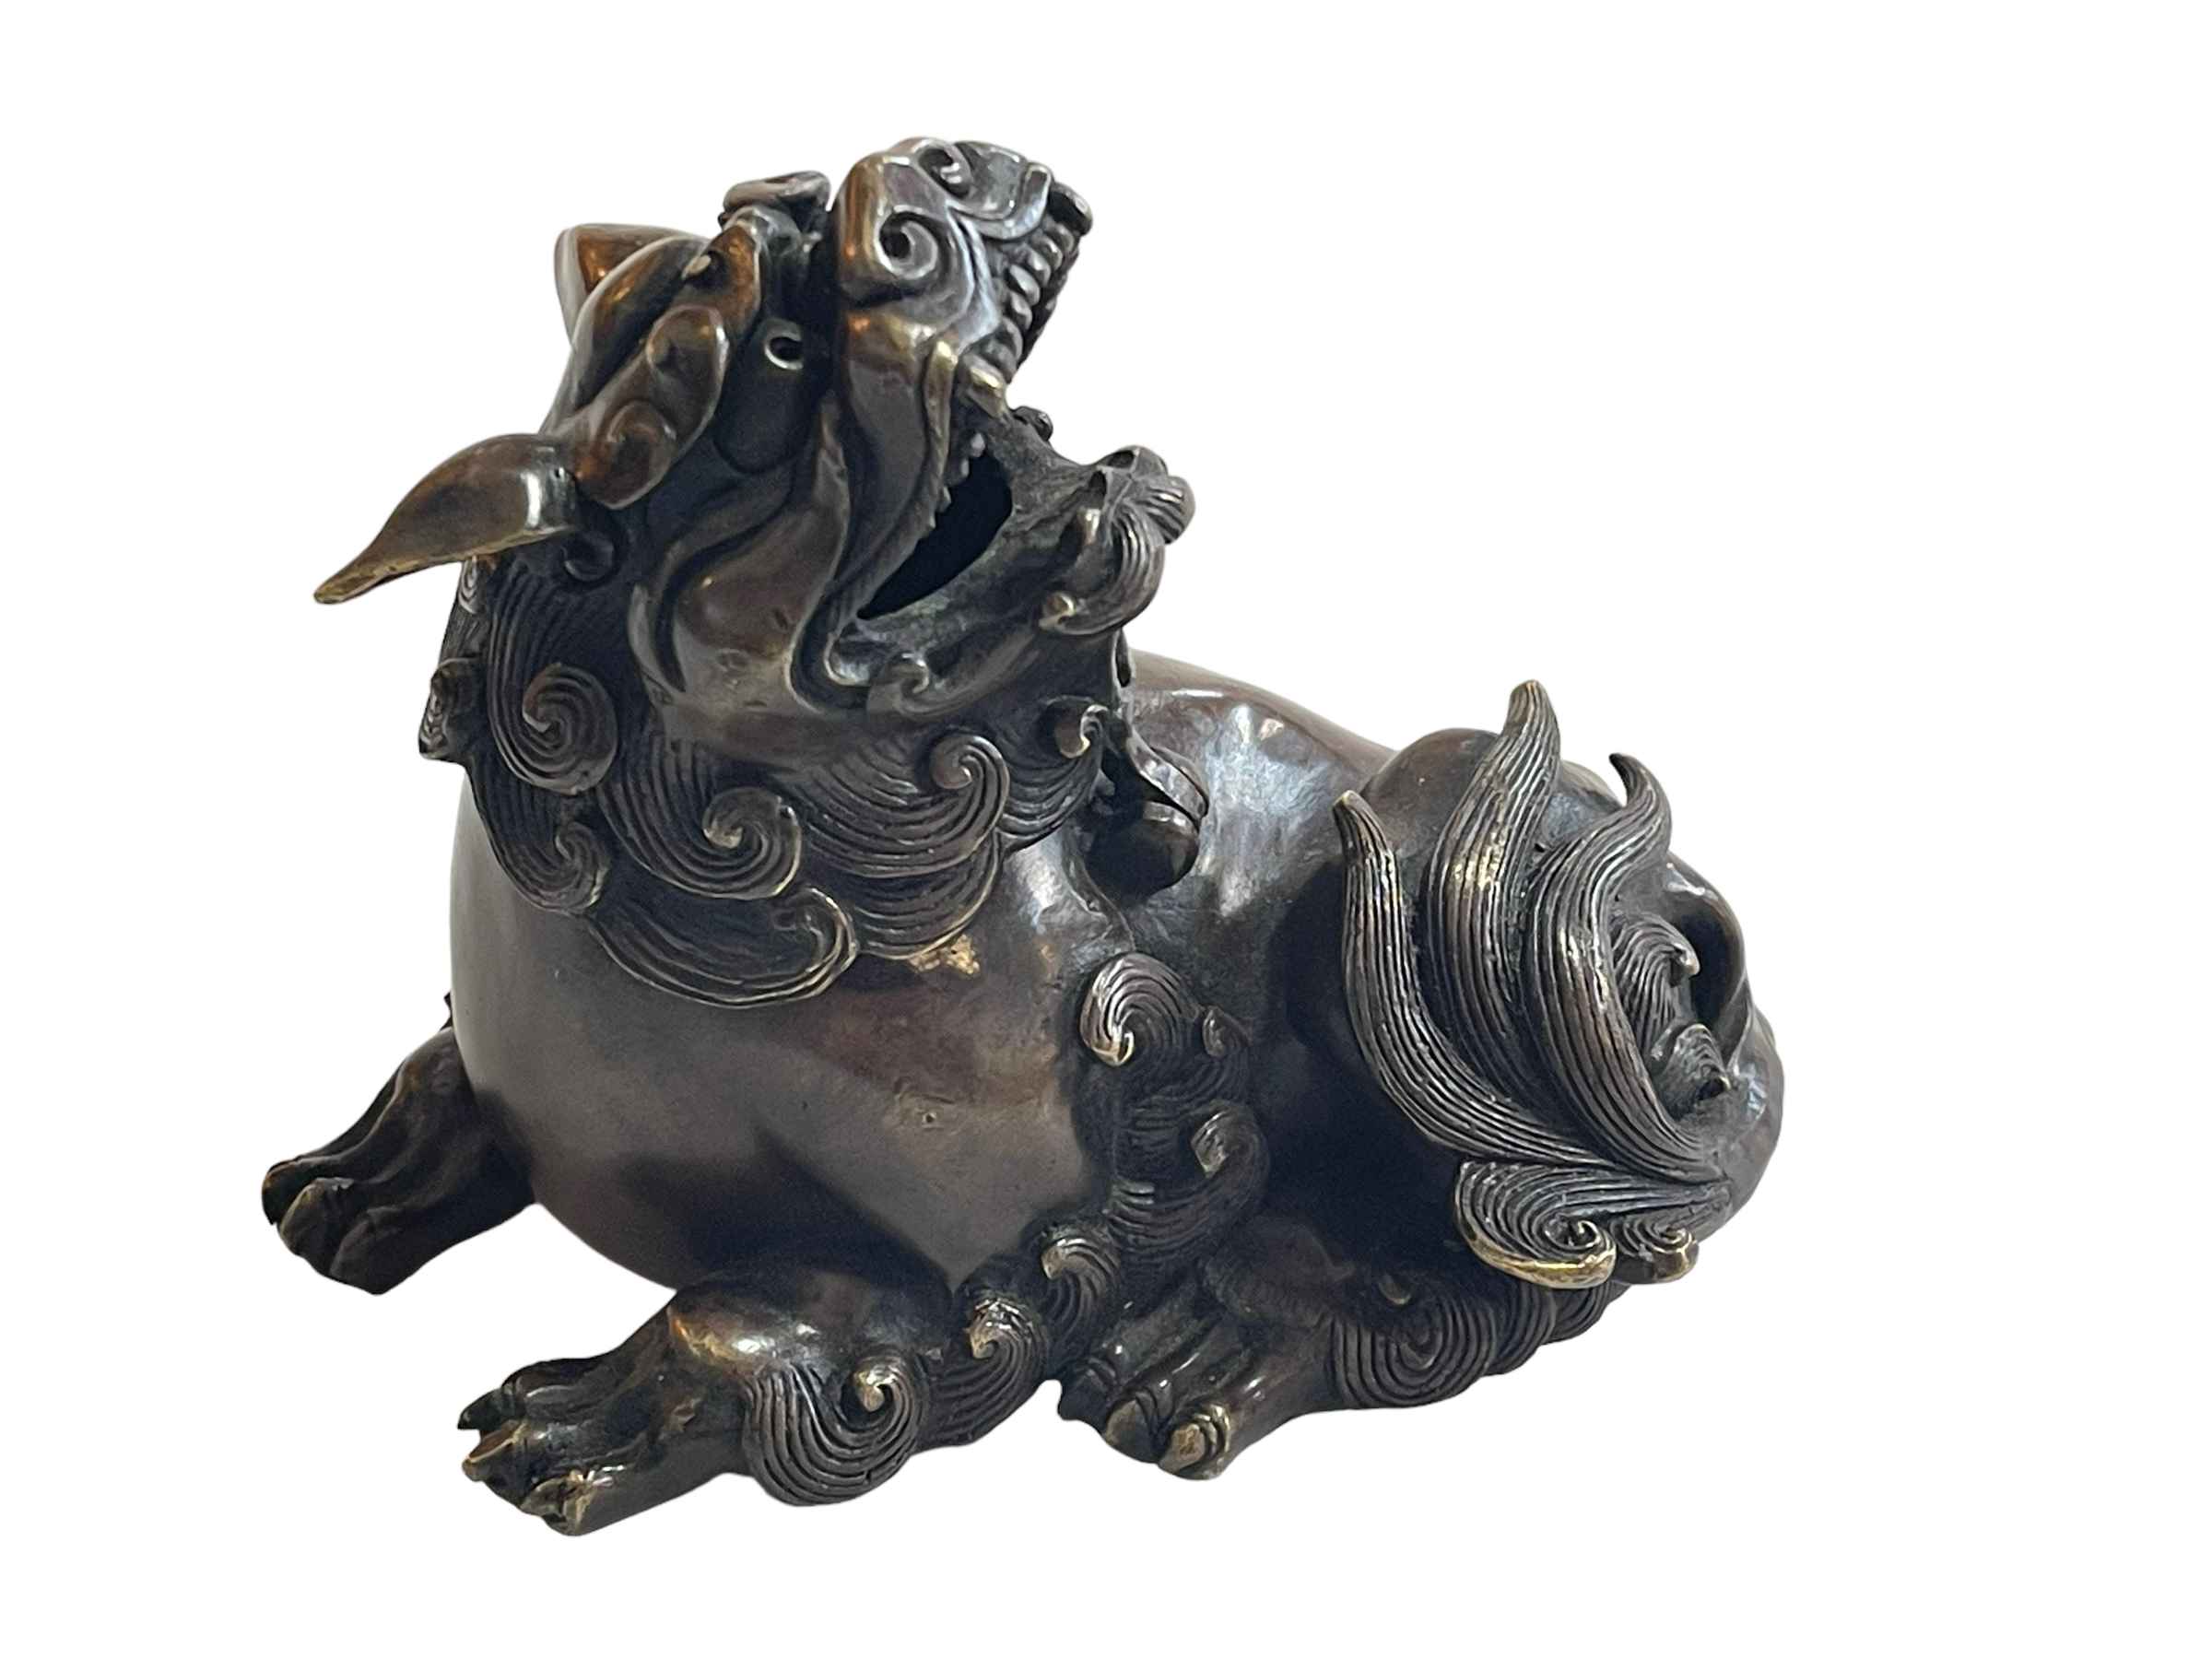 Bronze foo dog with hinged head, 13cm length.